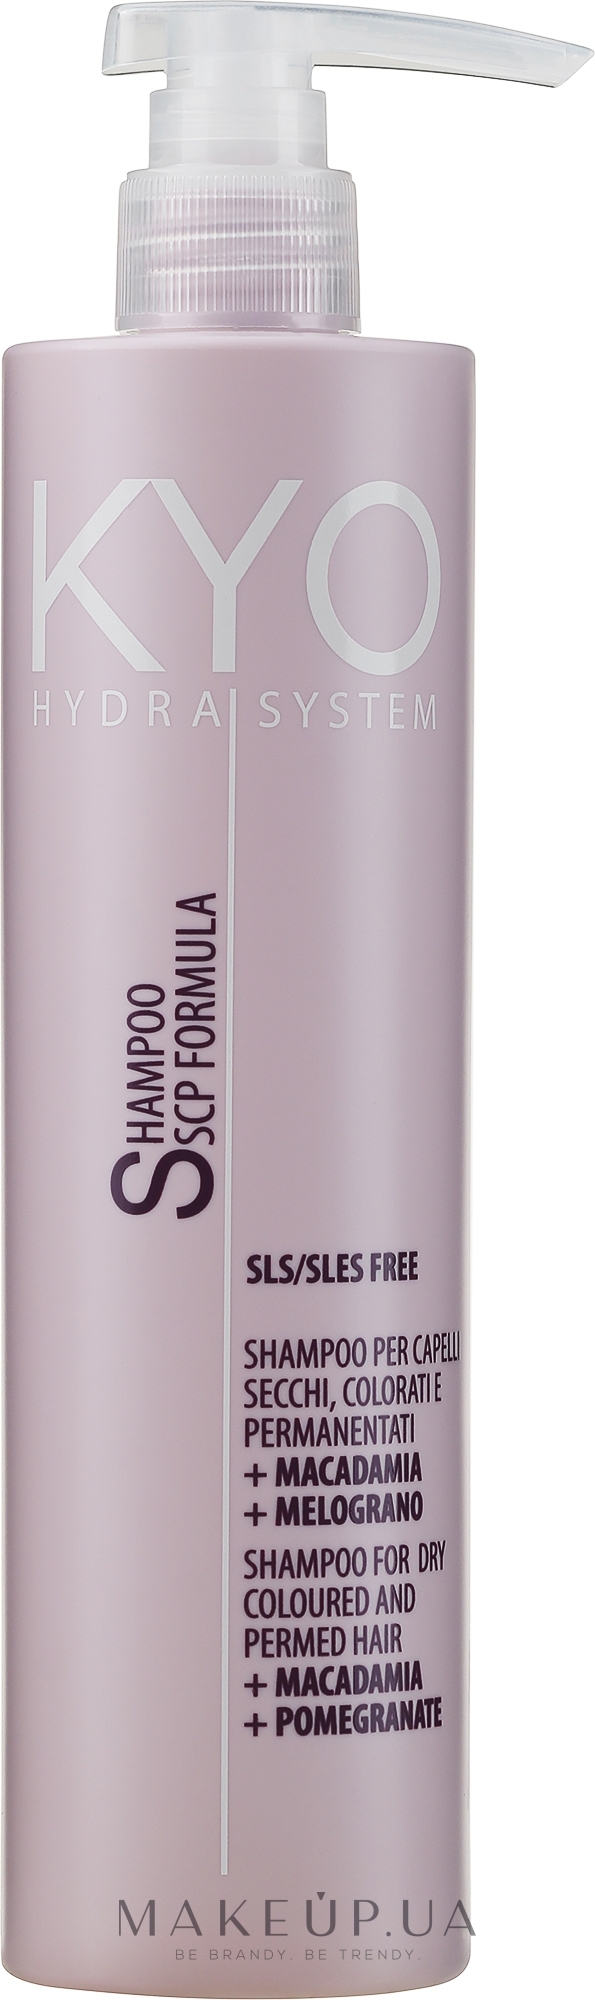 Шампунь для сухих окрашенных волос - Kyo Hydra System Shampoo For Dry Coloured And Permed Hair — фото 500ml